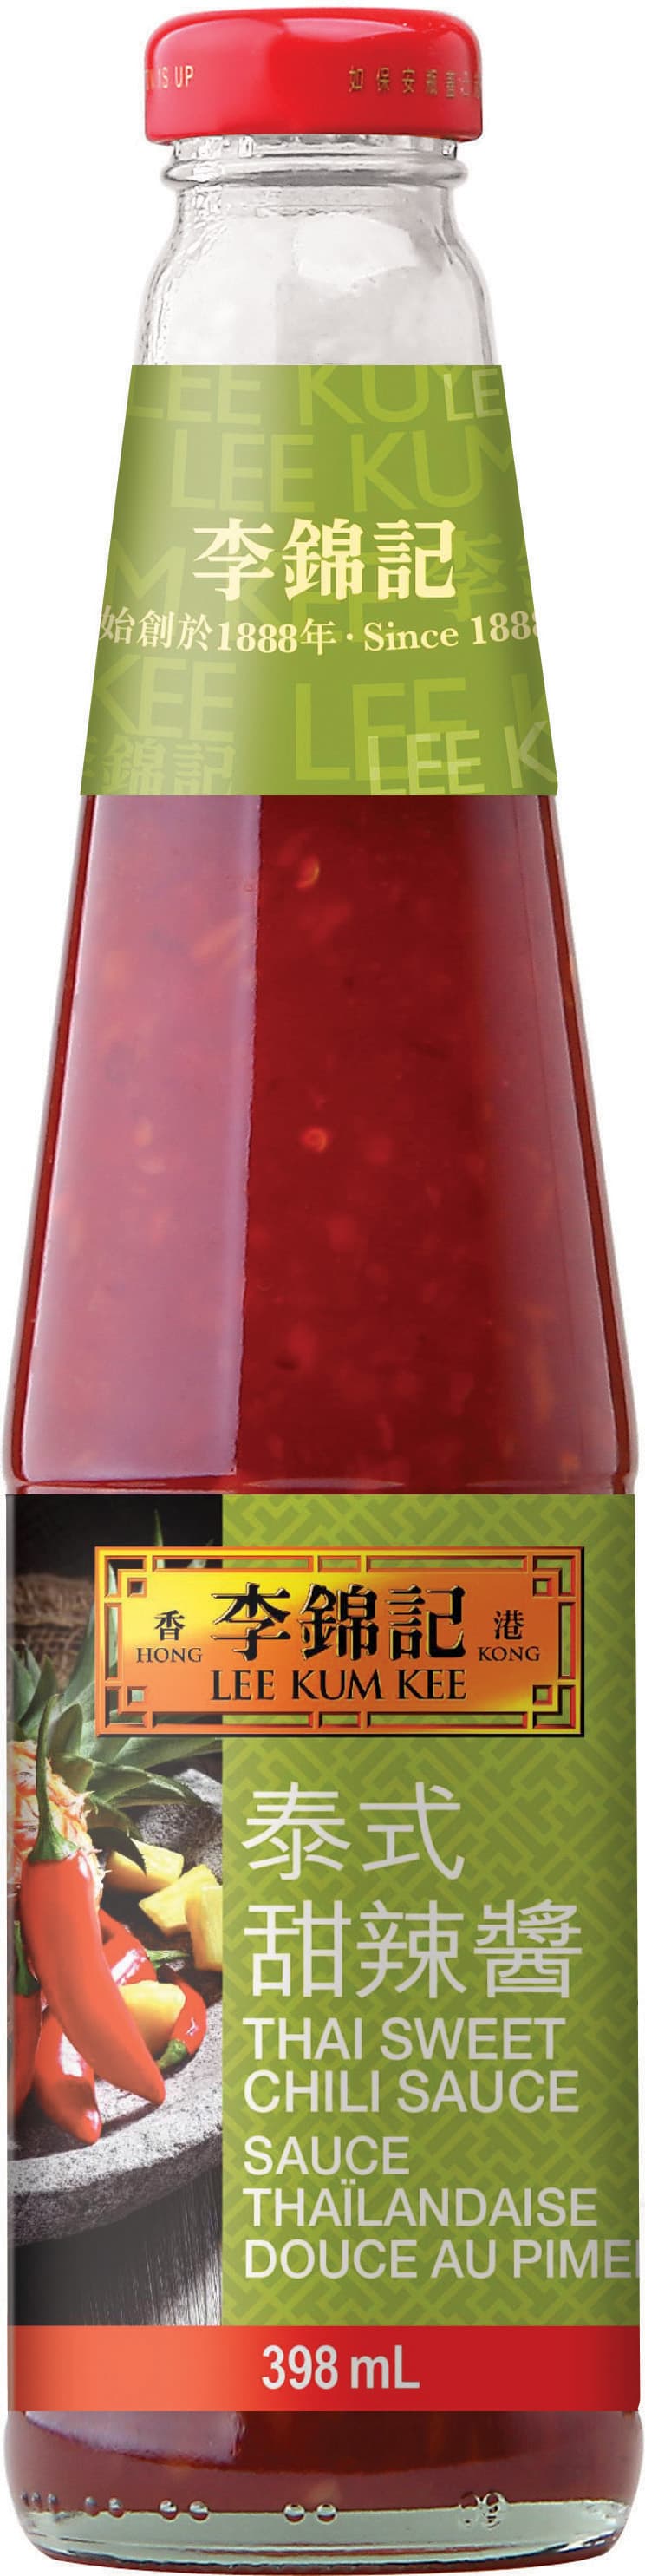 Thai Sweet Chili Sauce 398ml 